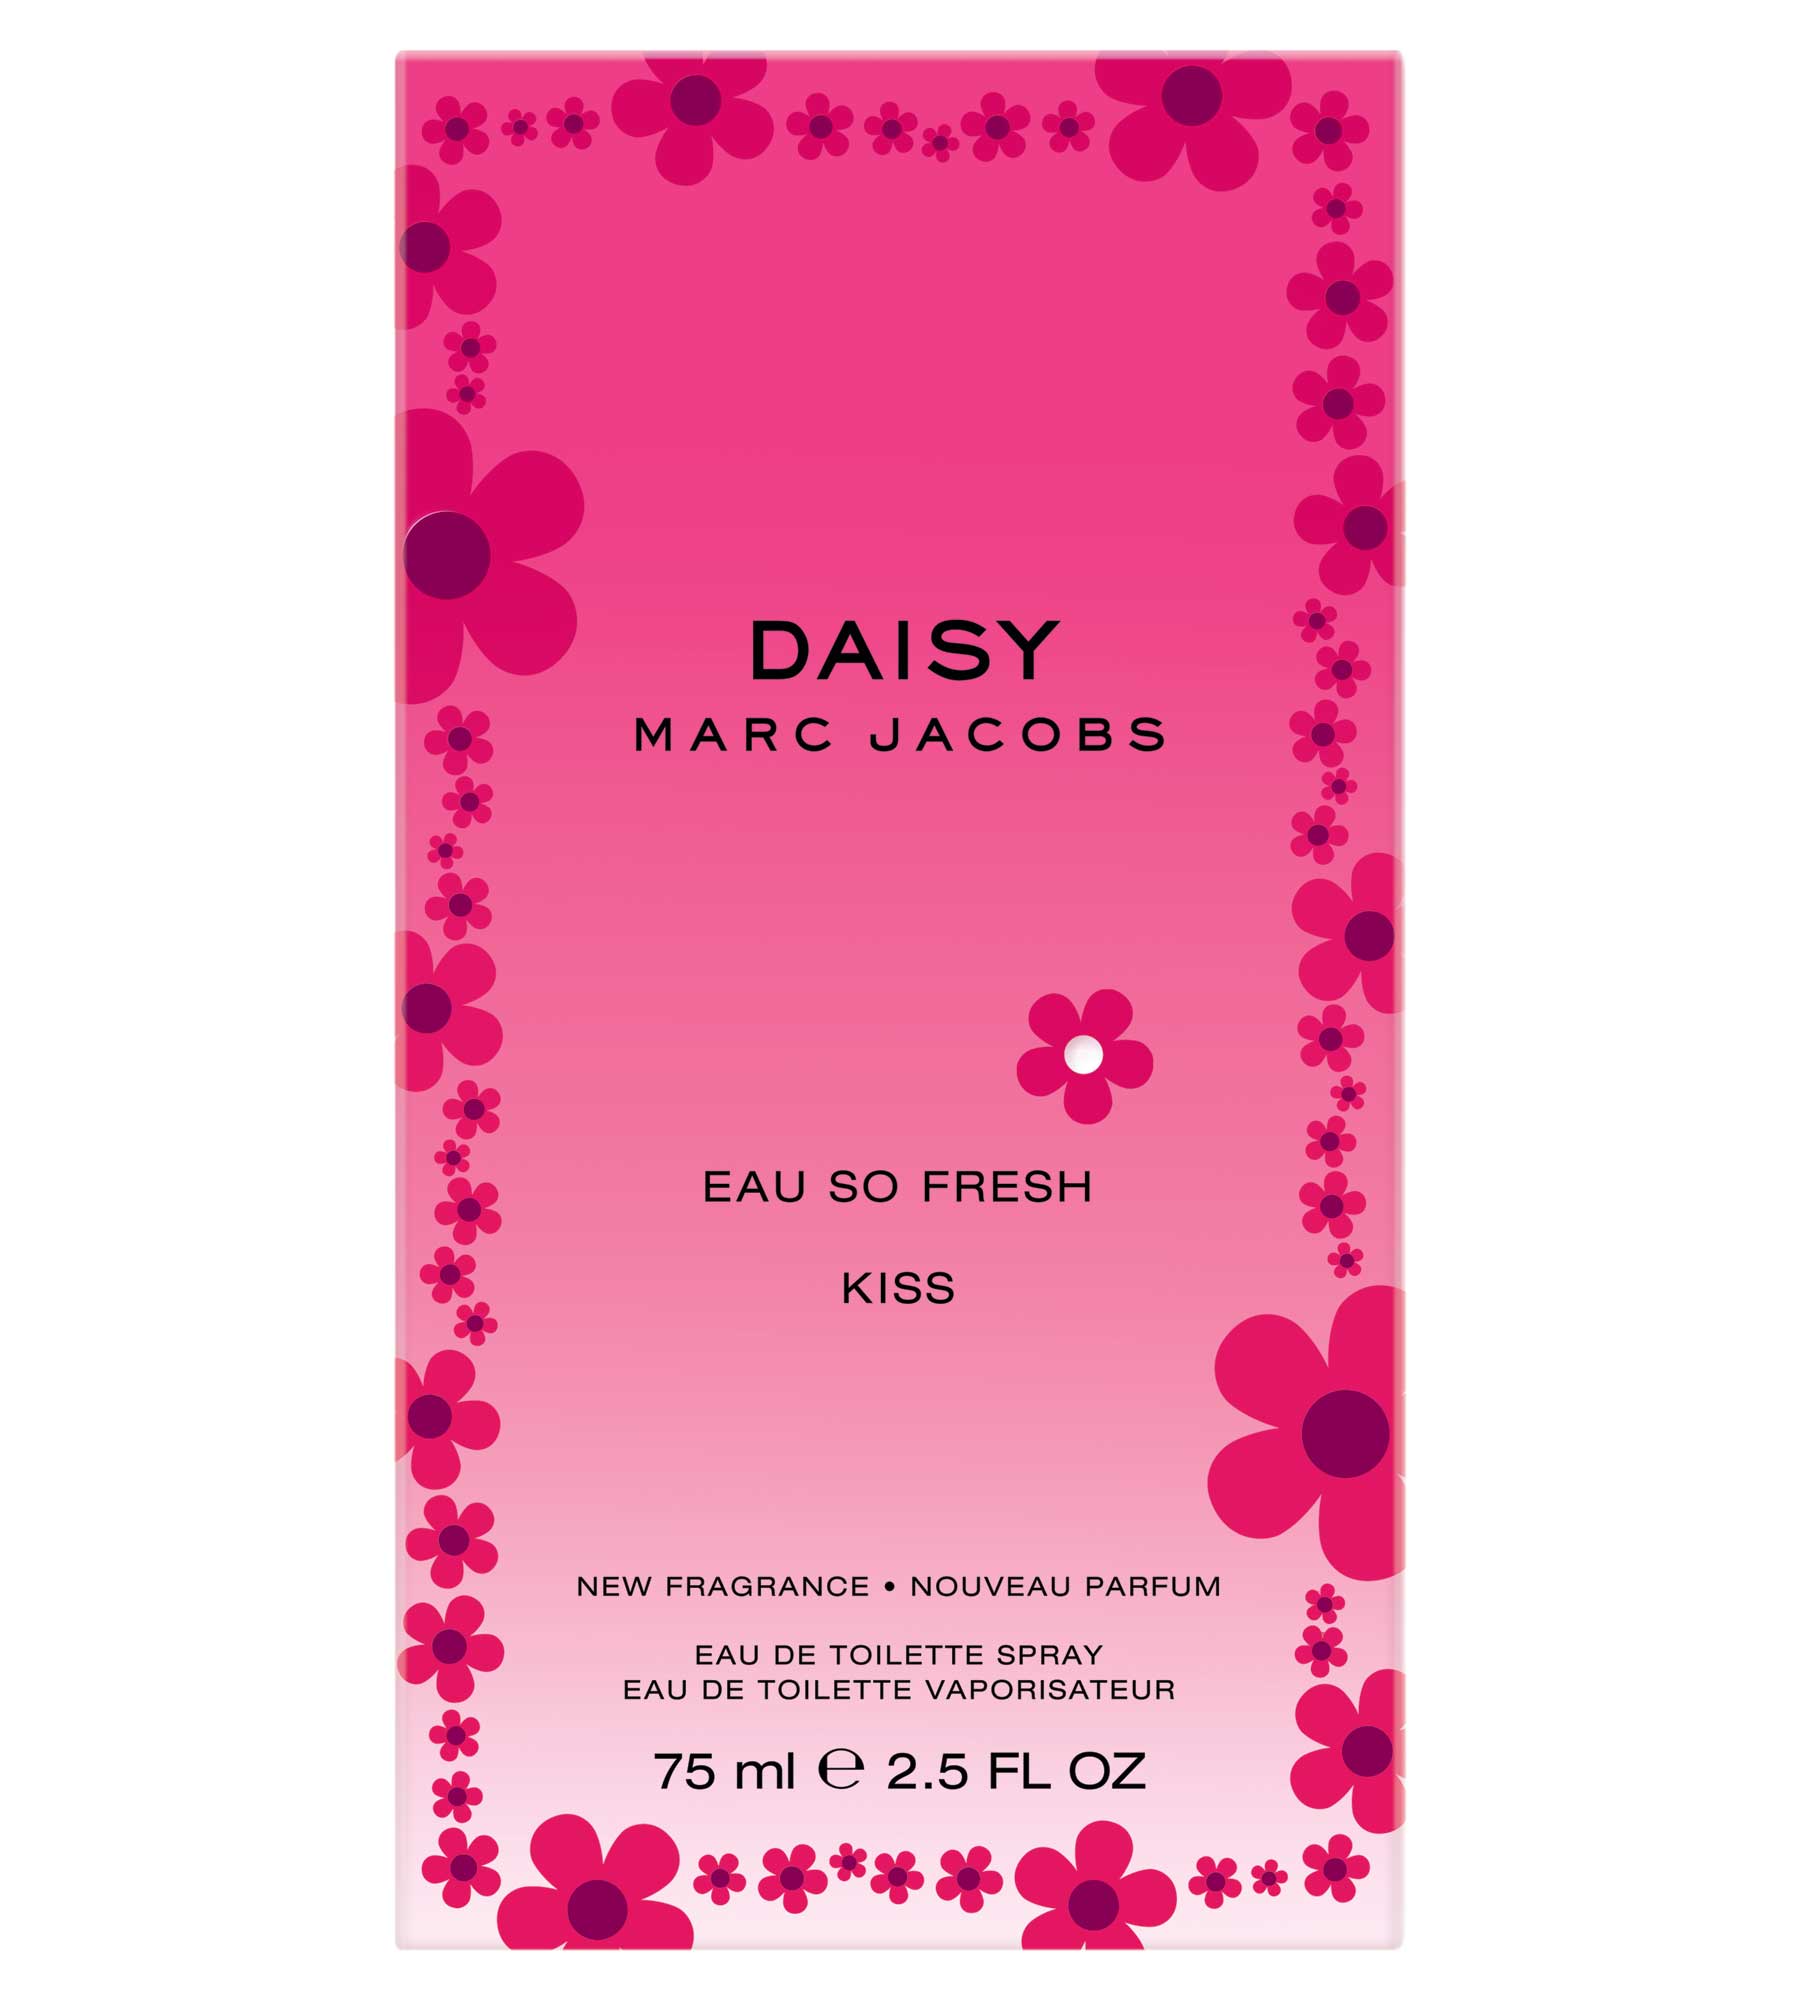 Daisy Eau So Fresh Kiss Marc Jacobs perfume - a new fragrance for ...